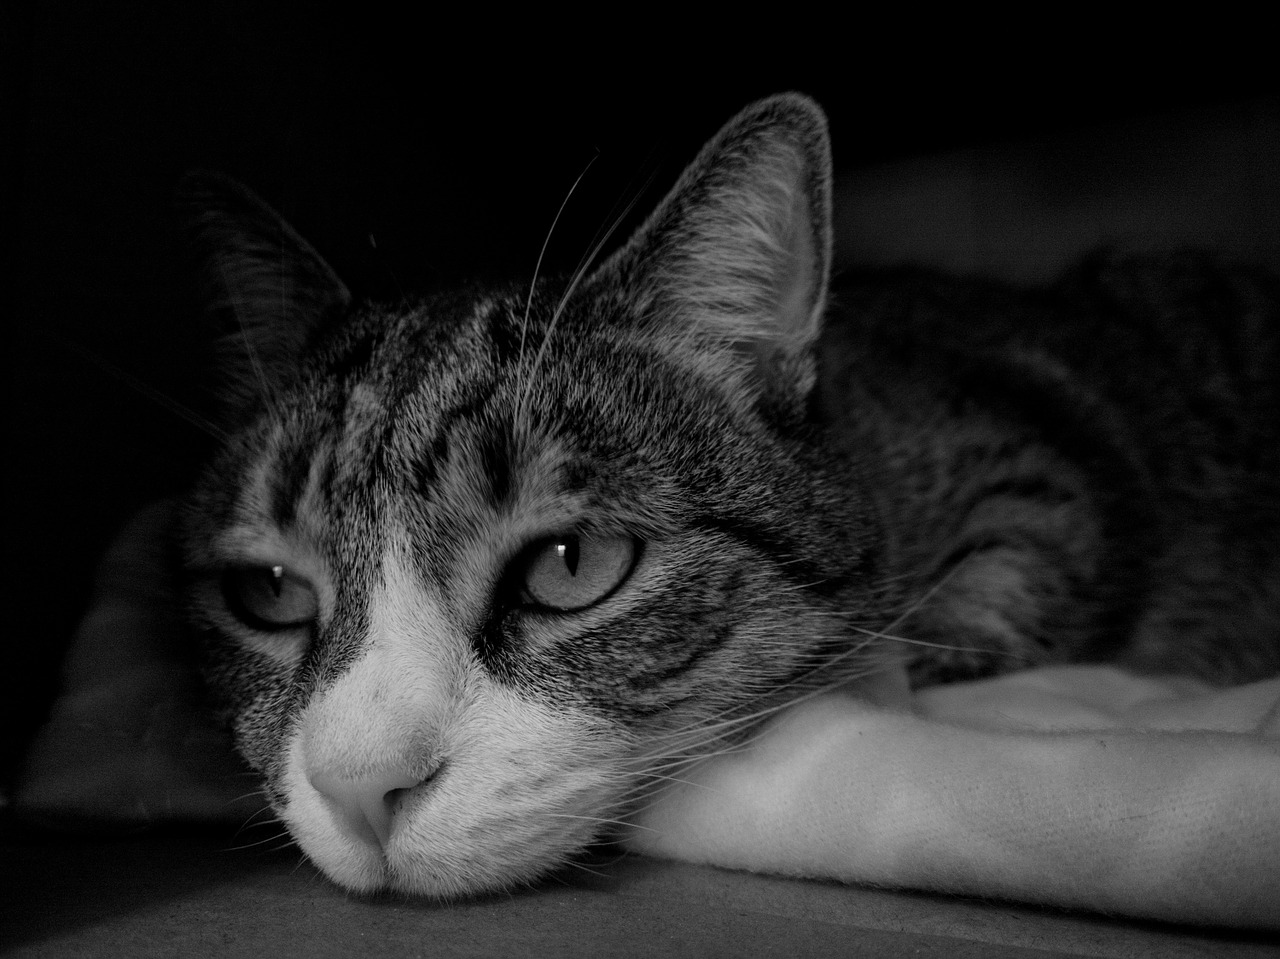 cat face portrait free photo